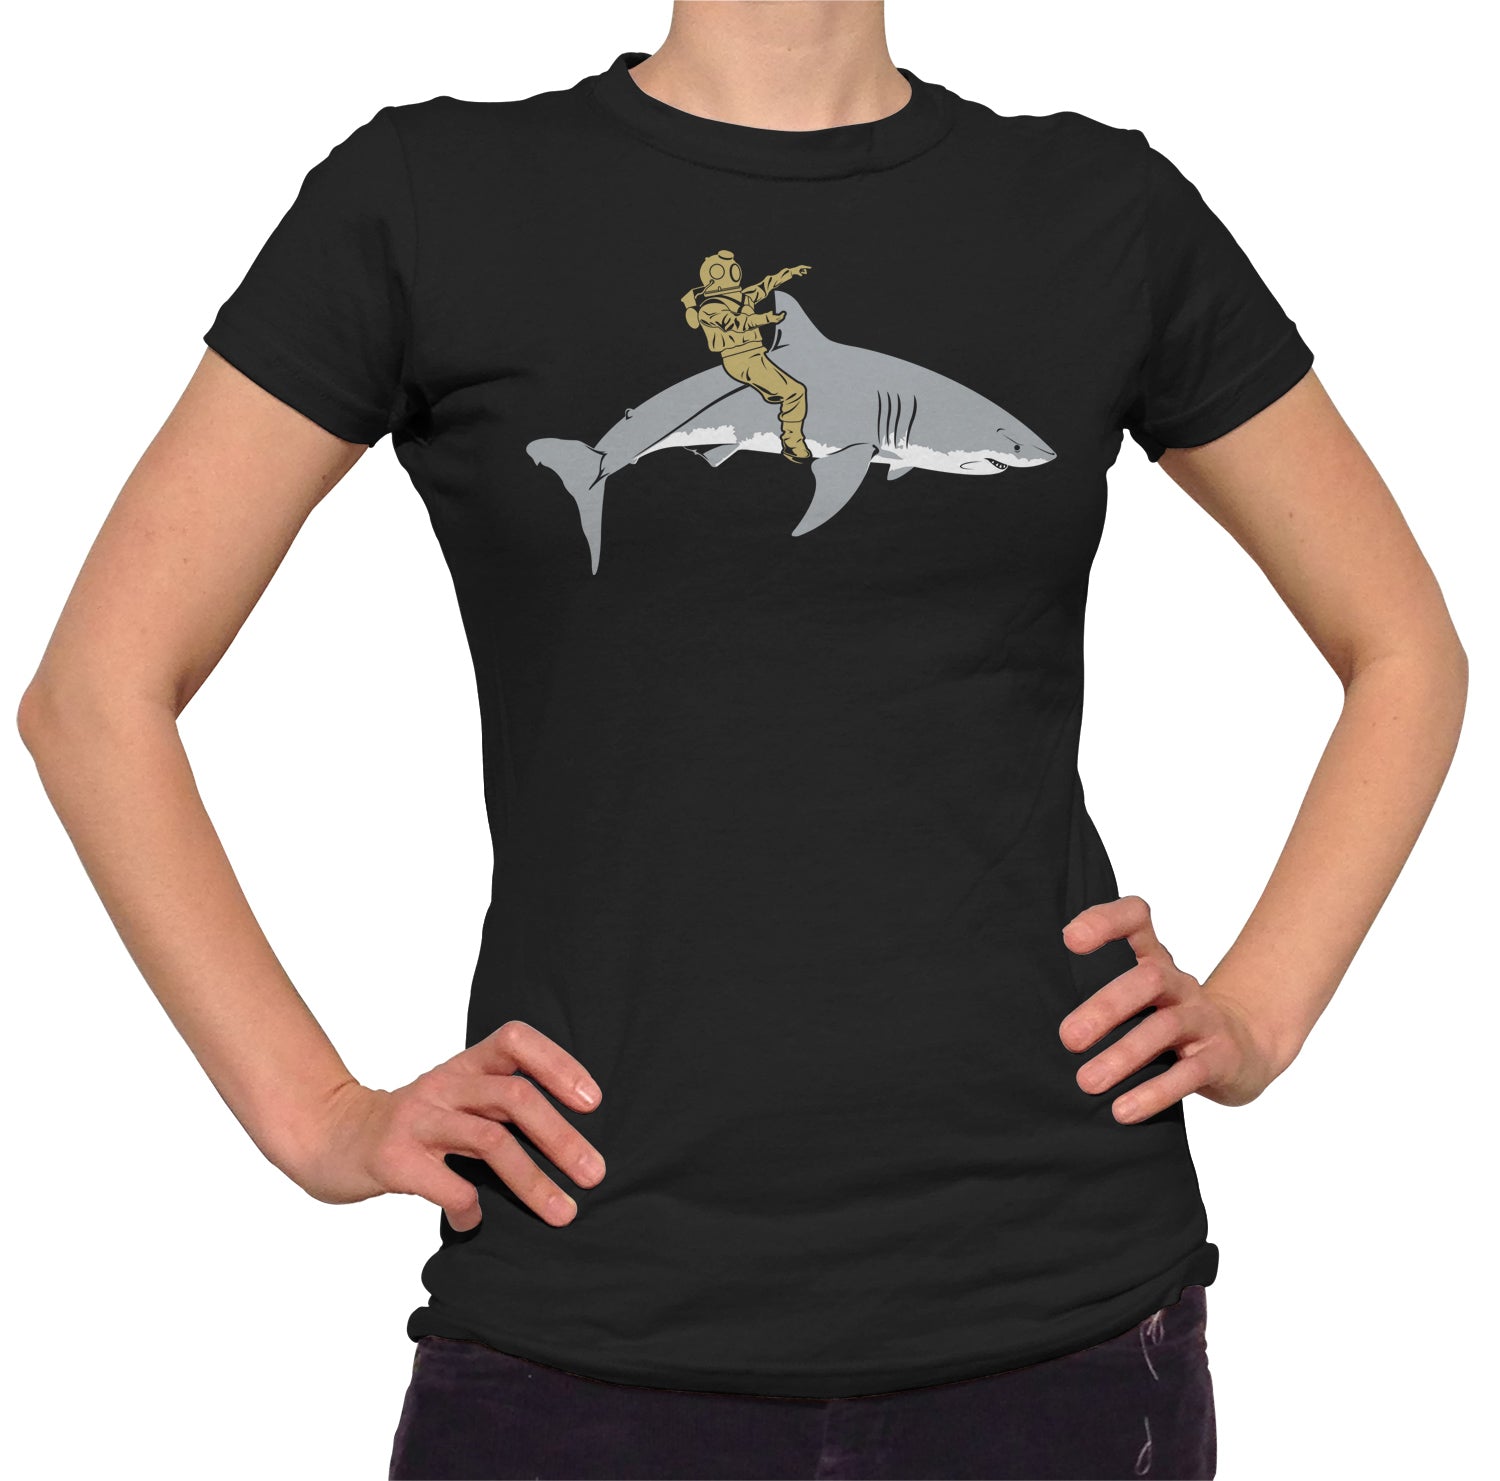 Women's Diver Riding a Shark T-Shirt - By Ex-Boyfriend